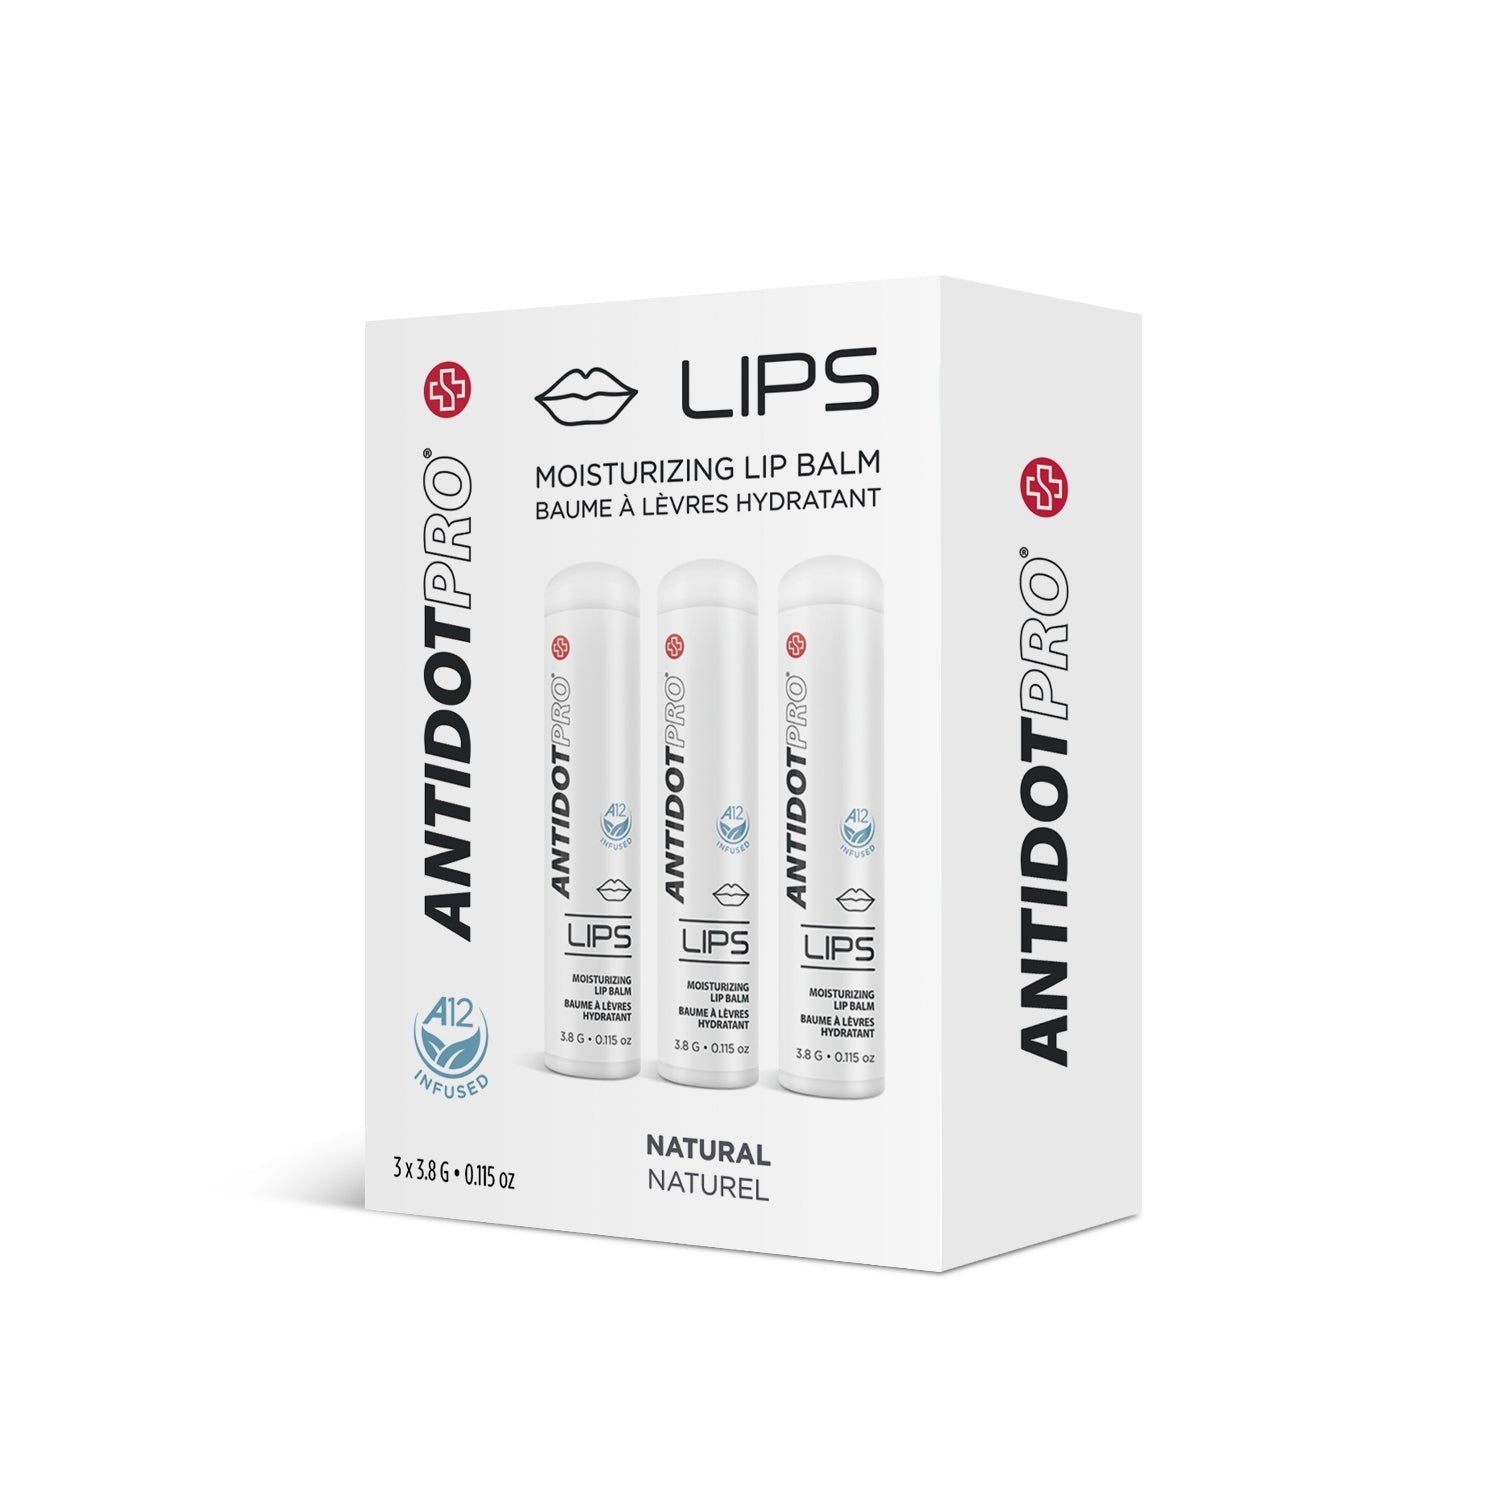 AntidotPro Lips (Natural) - 3 x 3.8G [ANTI-NALIPS-PACK]